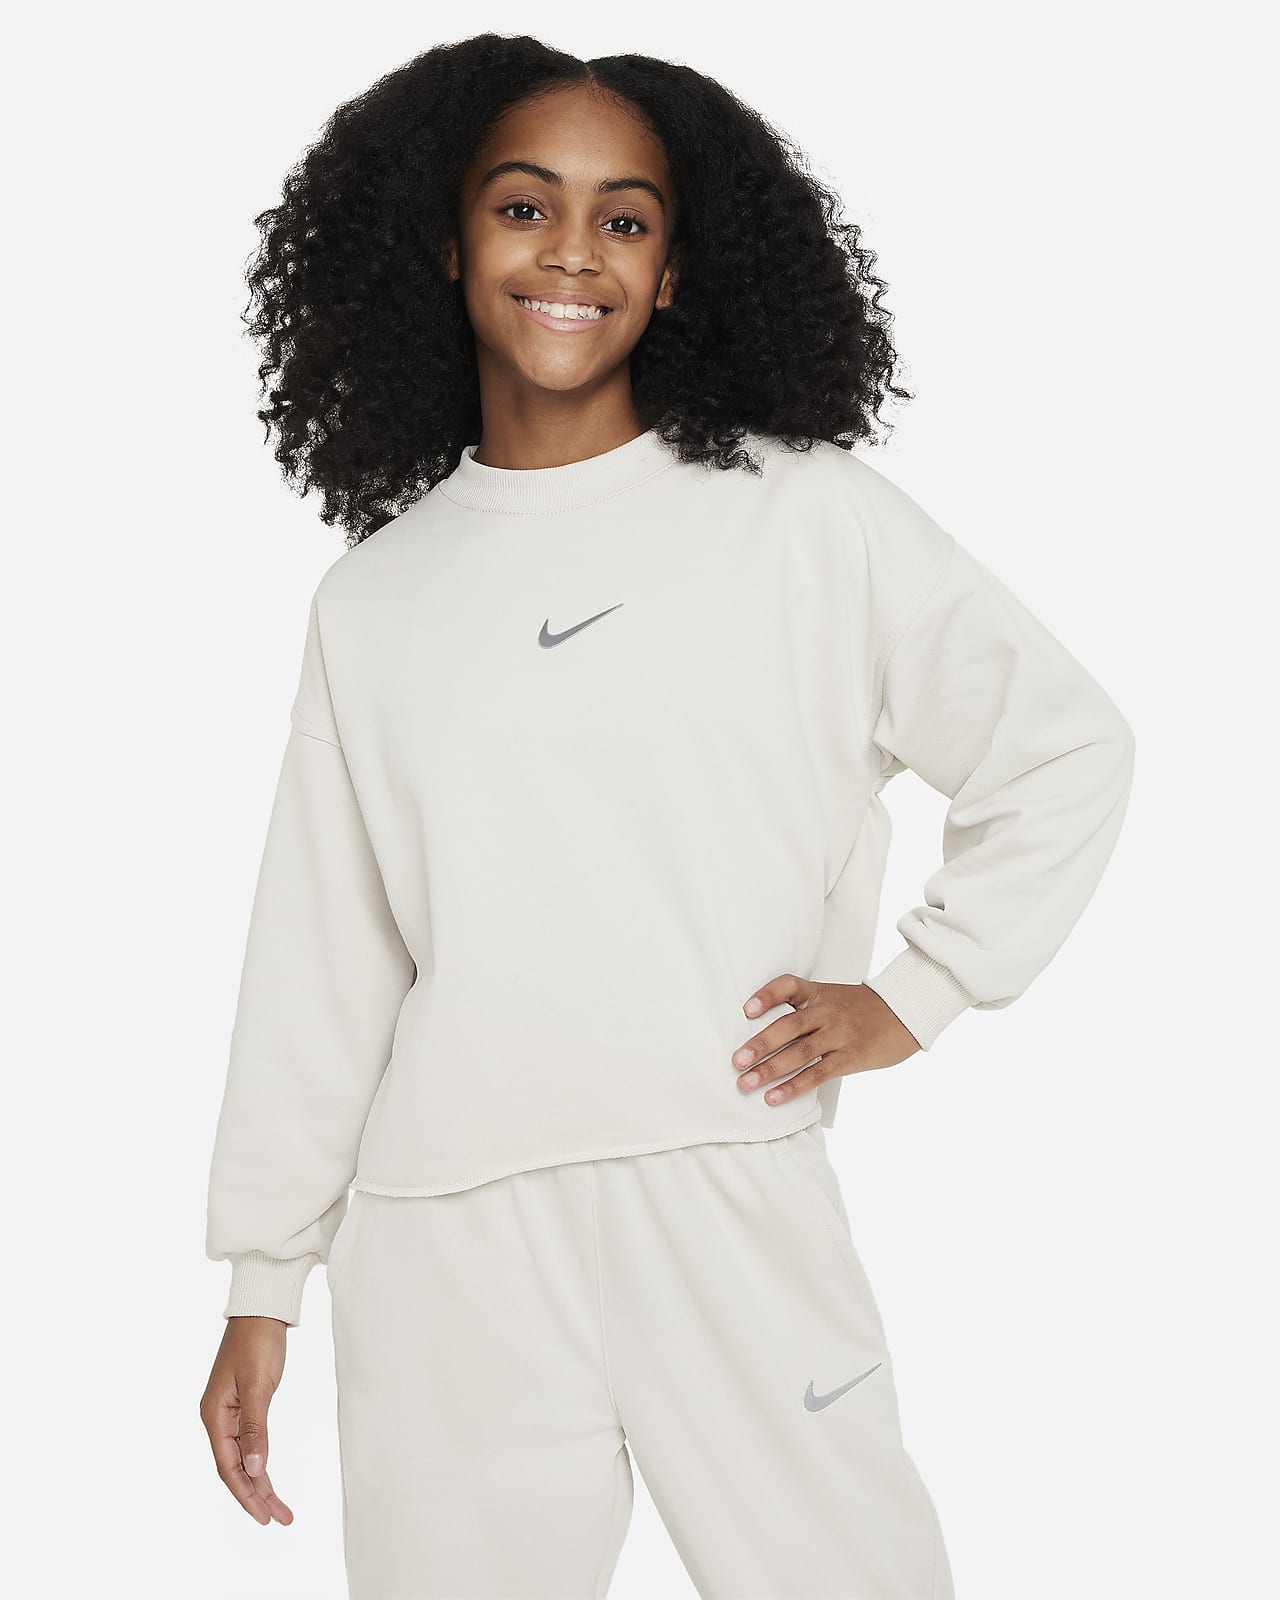 Sweat oversize à col ras-du-cou en tissu Fleece Nike Sportswear pour femme.  Nike LU